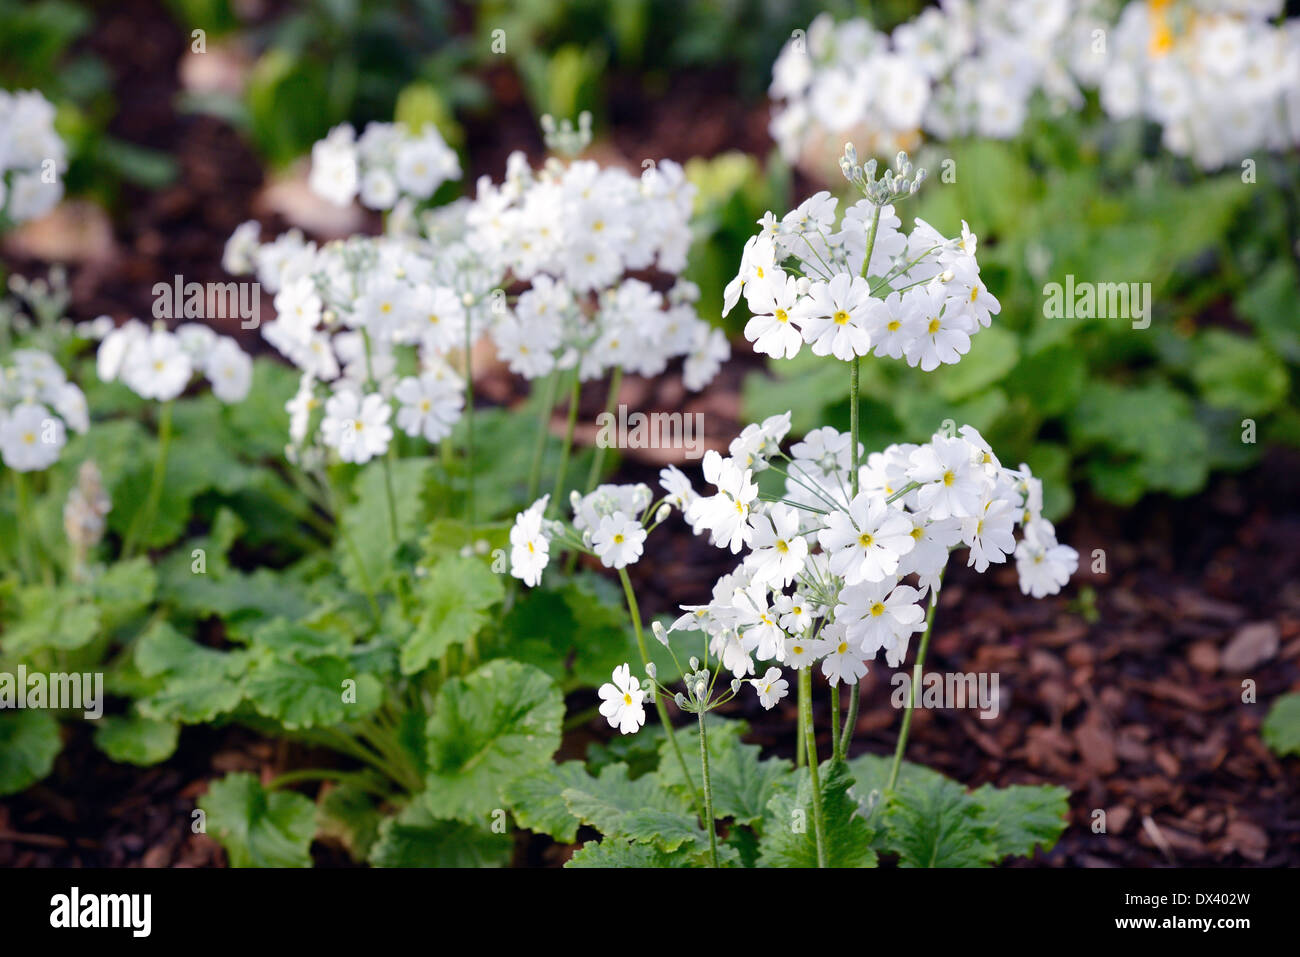 Couleur blanc soufflé plein de fleurs dans un jardin Banque D'Images